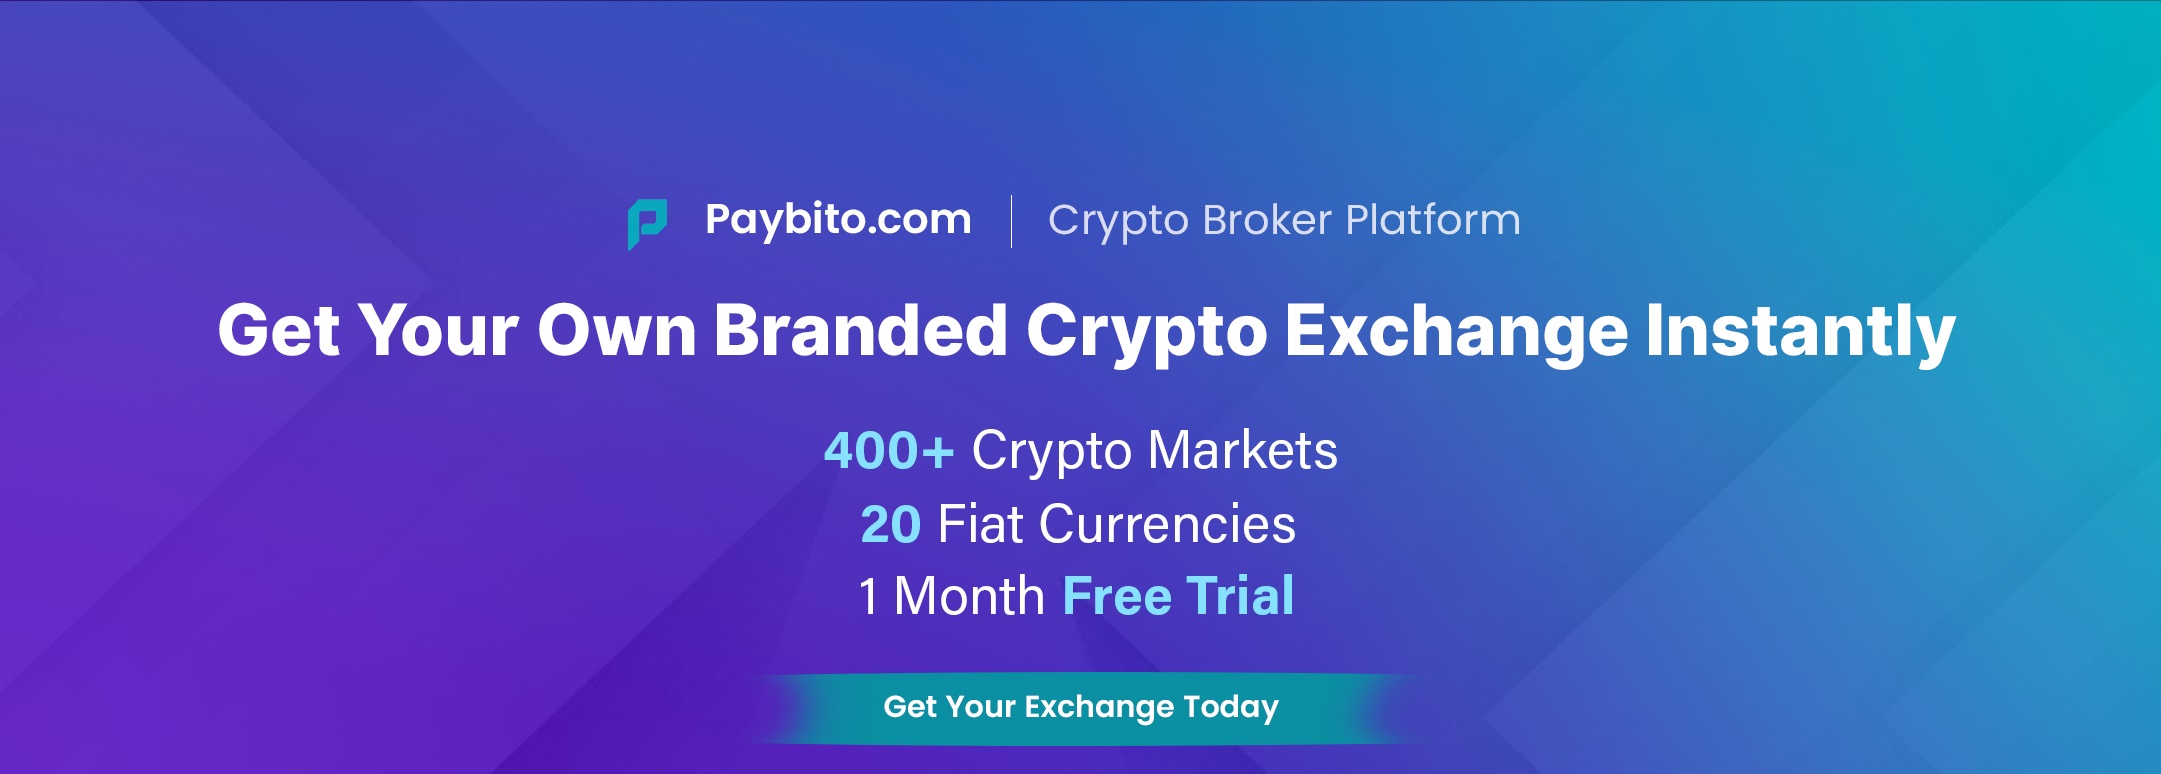 Crypto Broker Platform